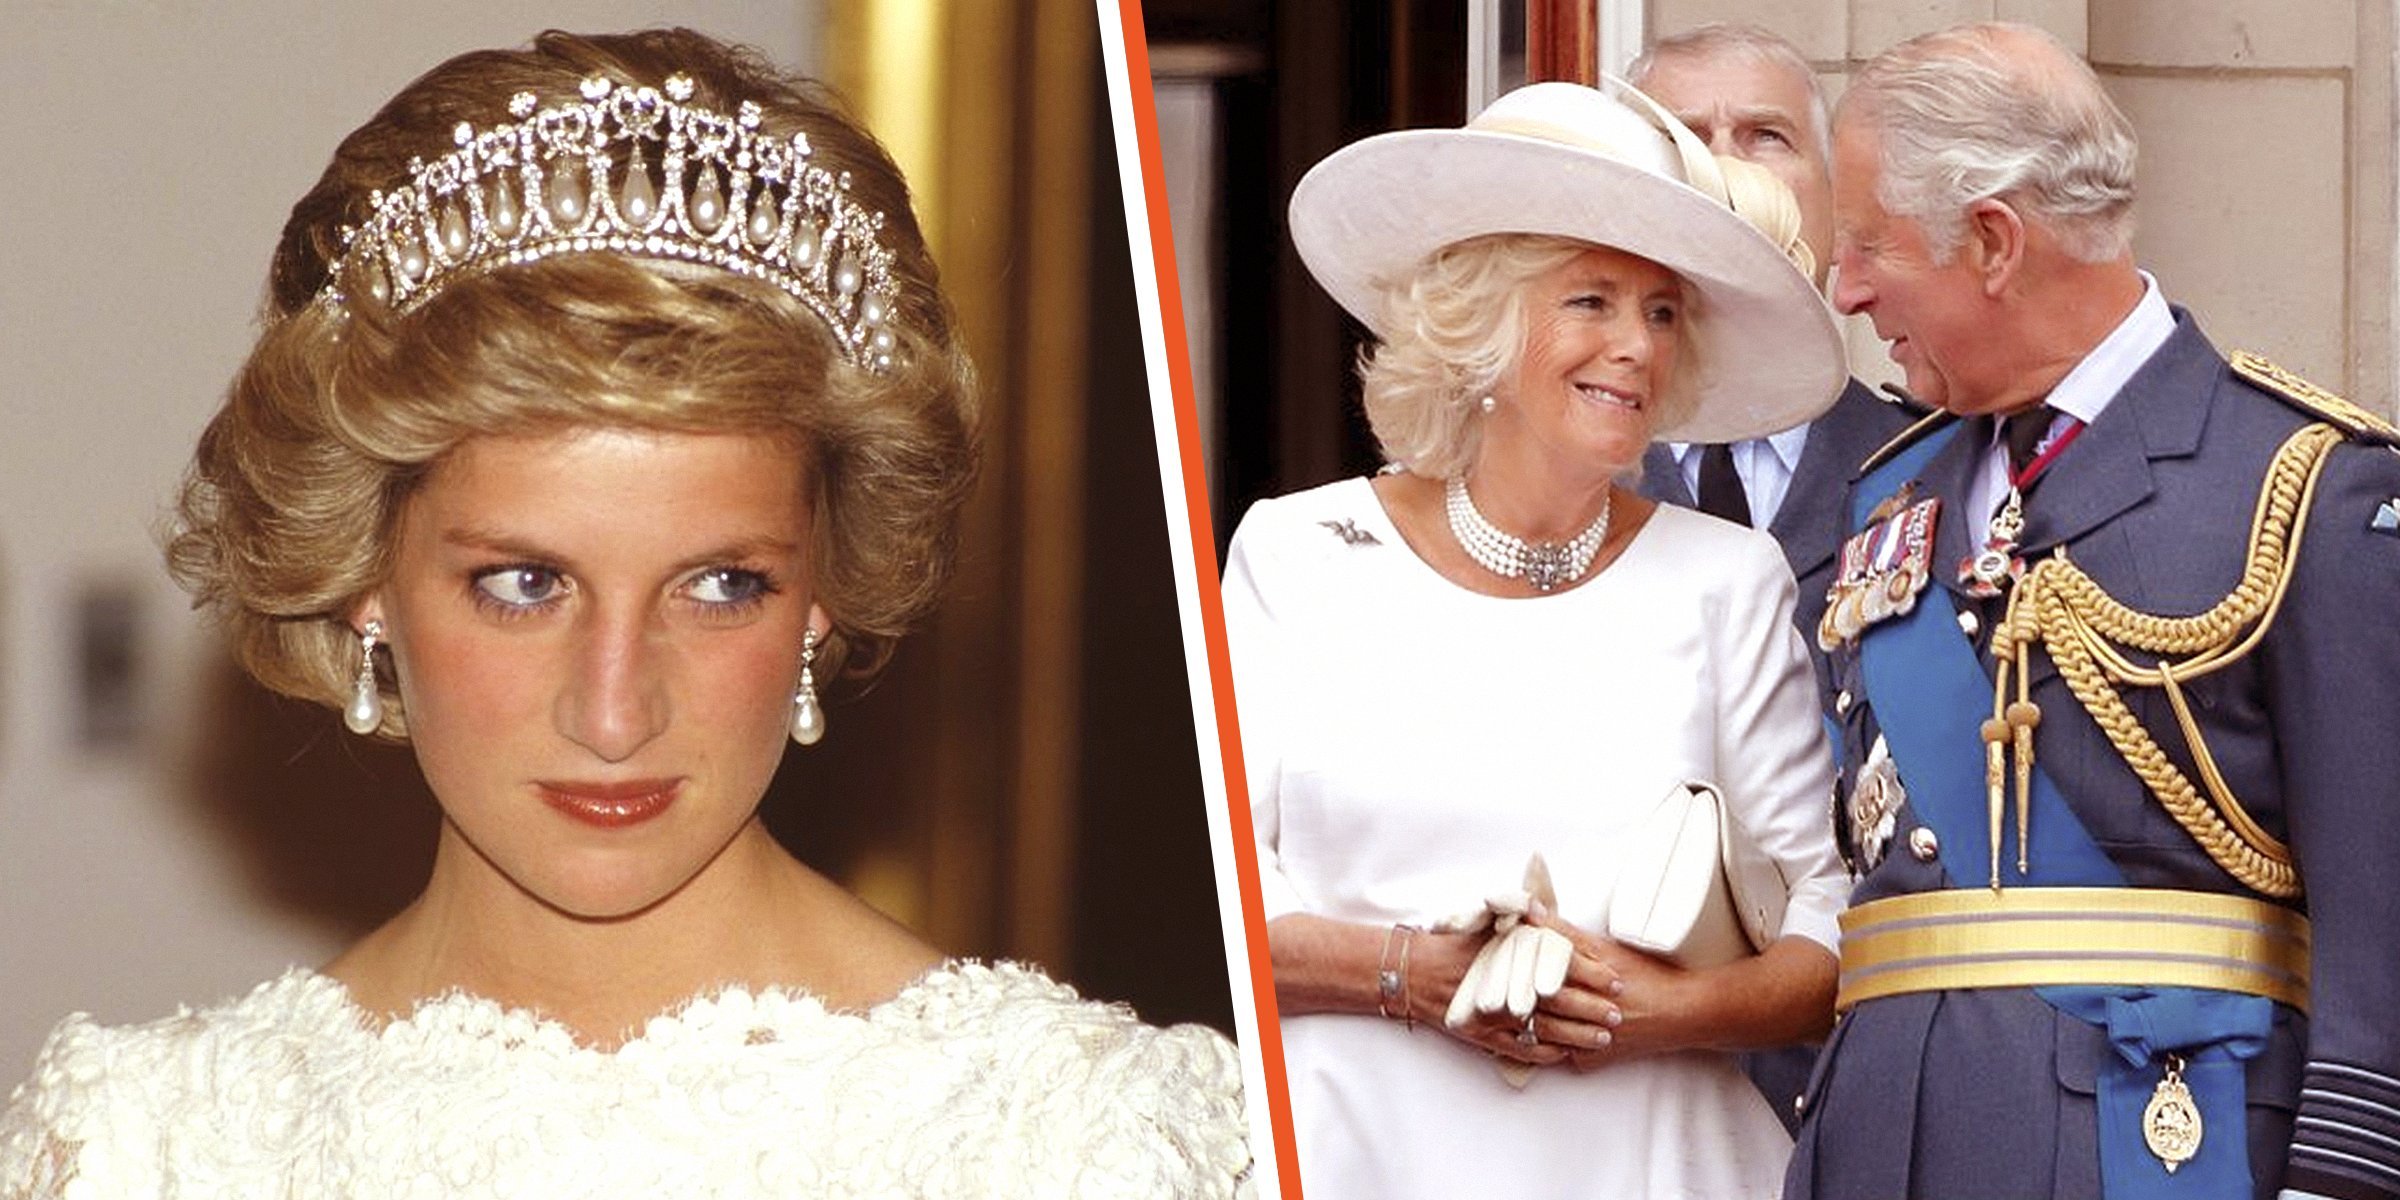 La princesa Diana | La reina consorte Camilla Parker-Bowles y el rey Charles III | Foto: Getty Images